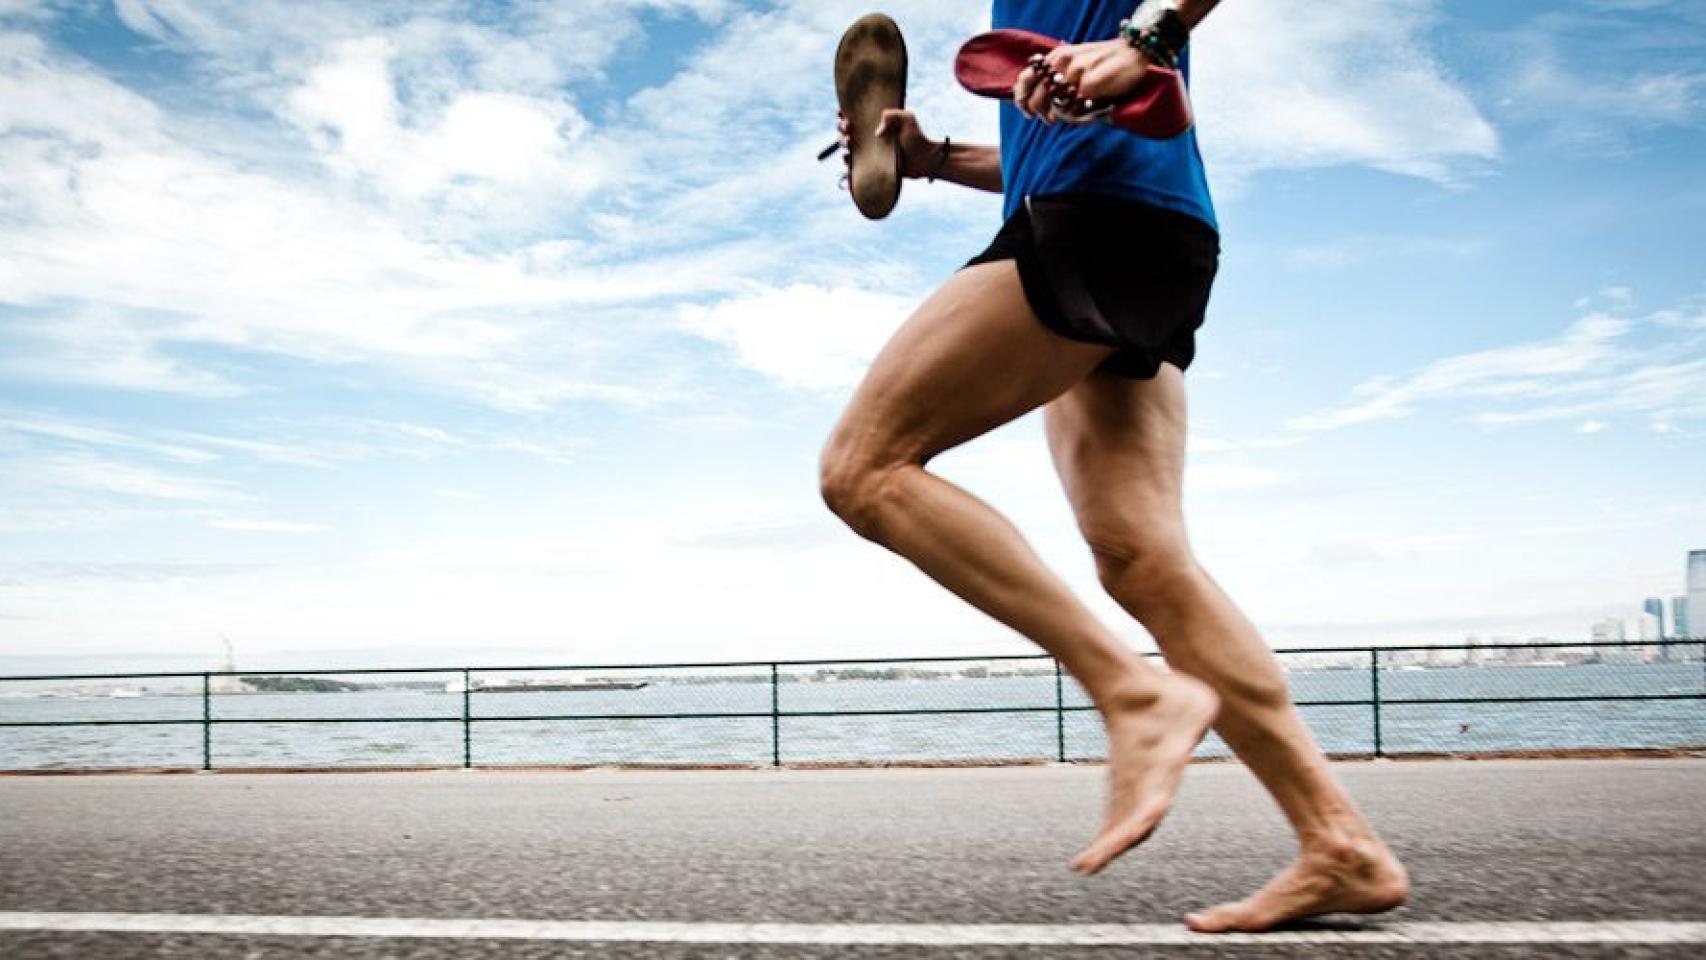 Andar o correr descalzo? Beneficios y desventajas - Fisiolution